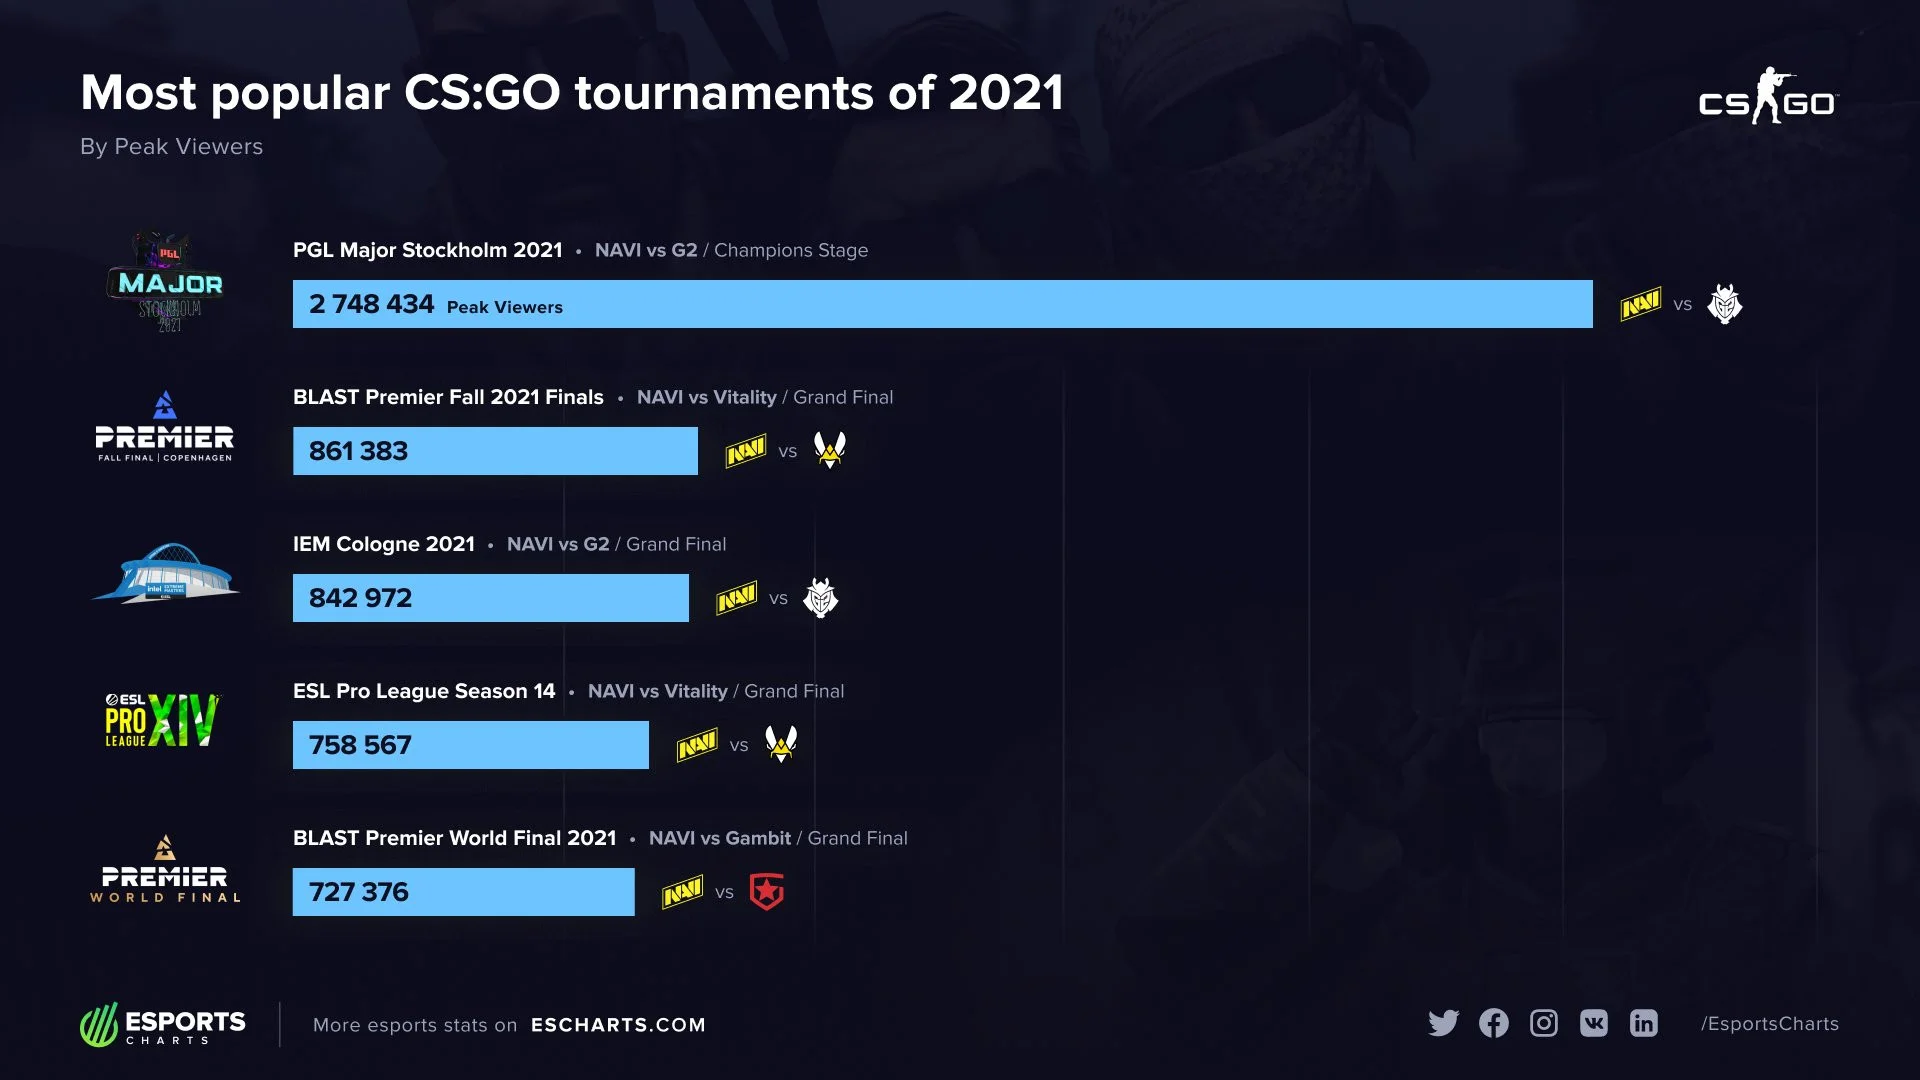 Финалы турниров по CS:GO с участием NaVi в 2021 году смотрели больше всего - фото 1